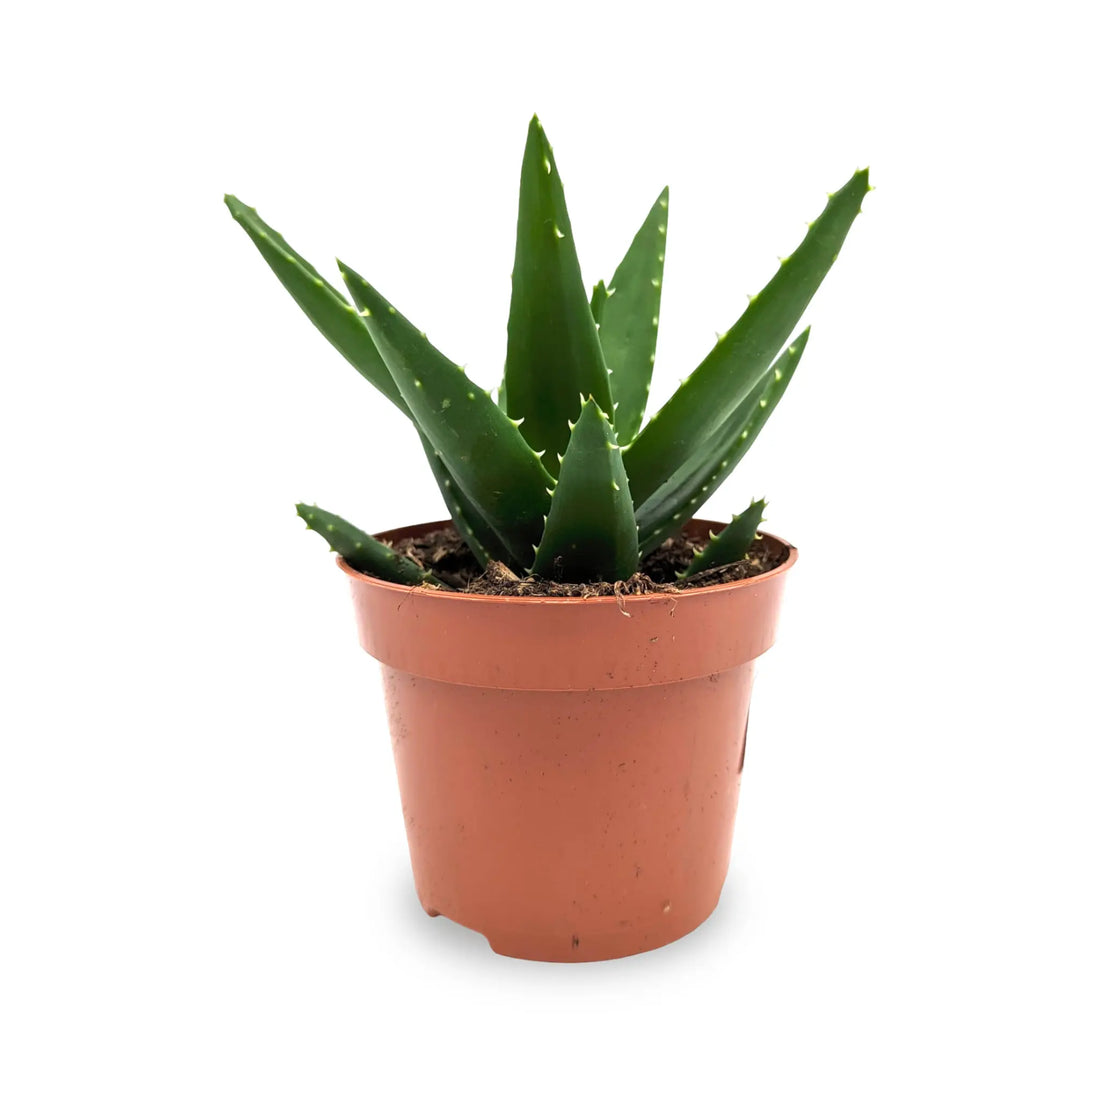 Aloe Perfolia - Rubble Aloe Leaf Culture